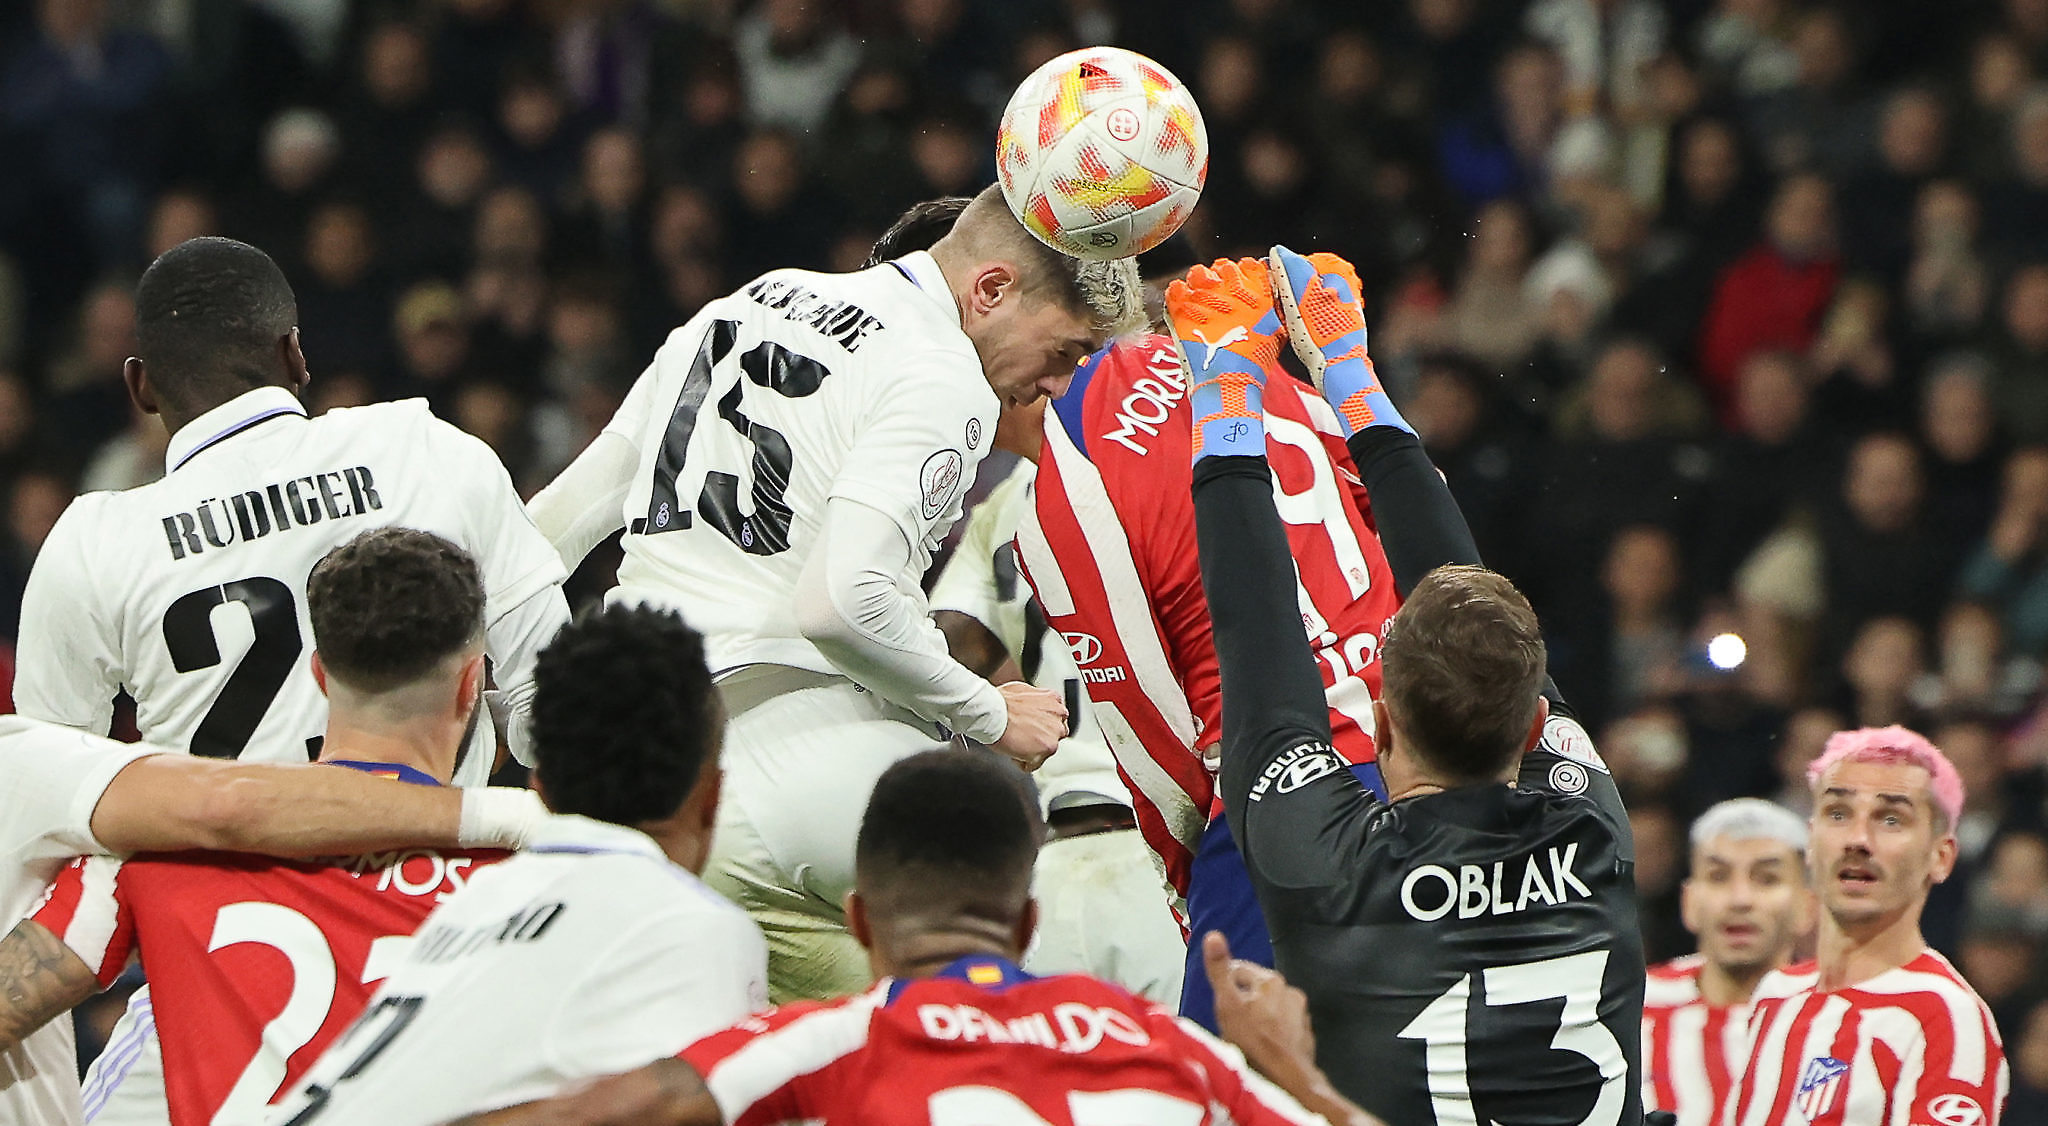 Calificaciones Blancas | Real Madrid 3-1 Atlético de Madrid